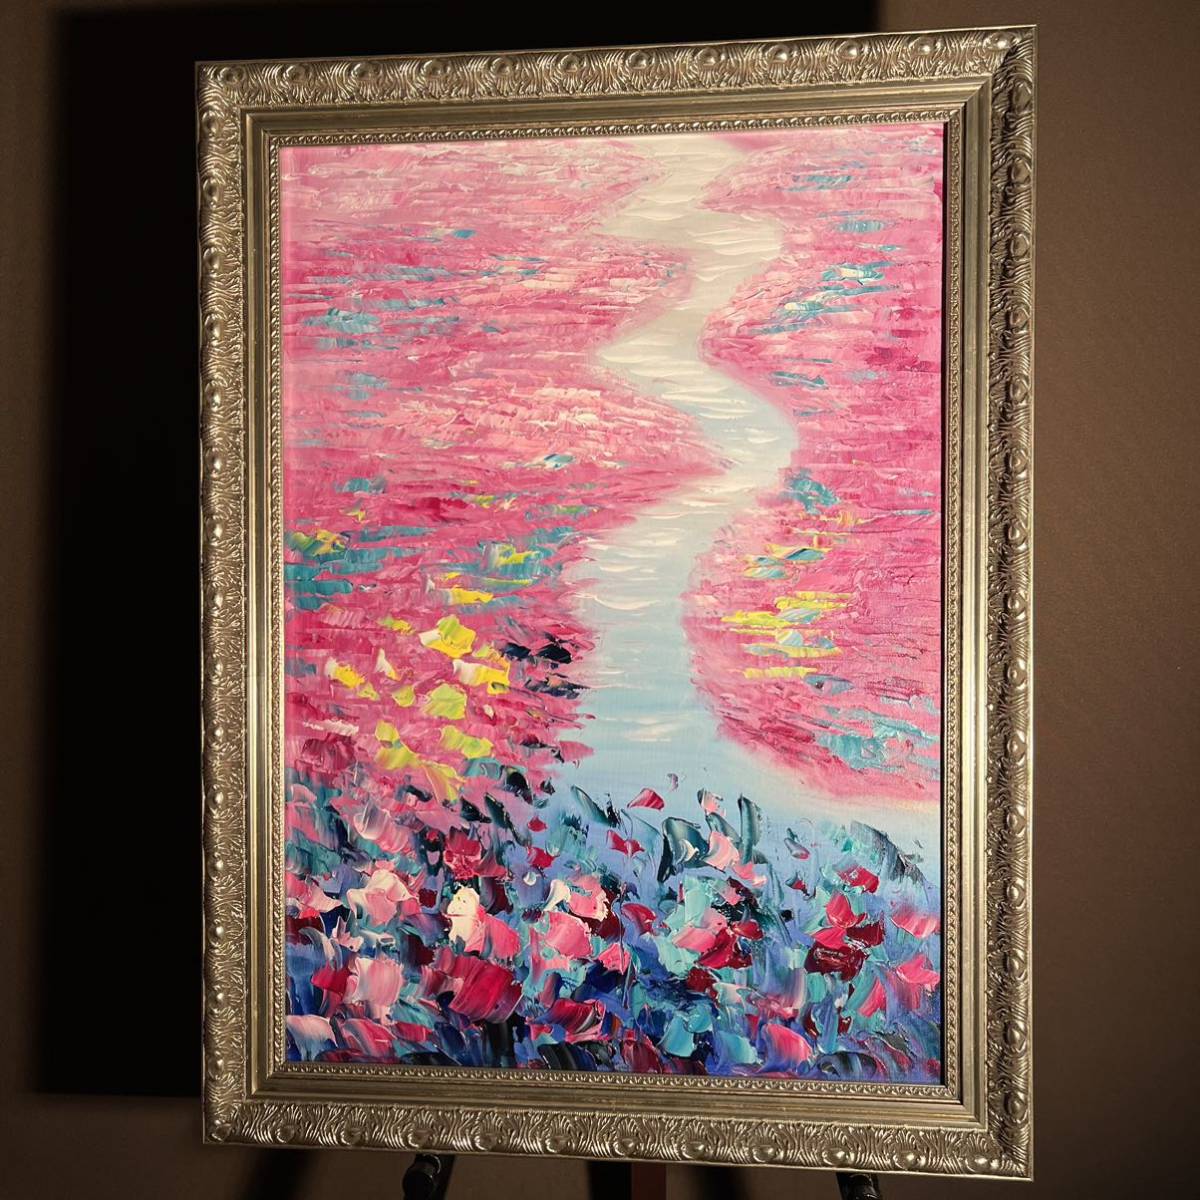 手書き油絵 色づく睡蓮の池 絵画 額付き インテリア 油彩画_画像1